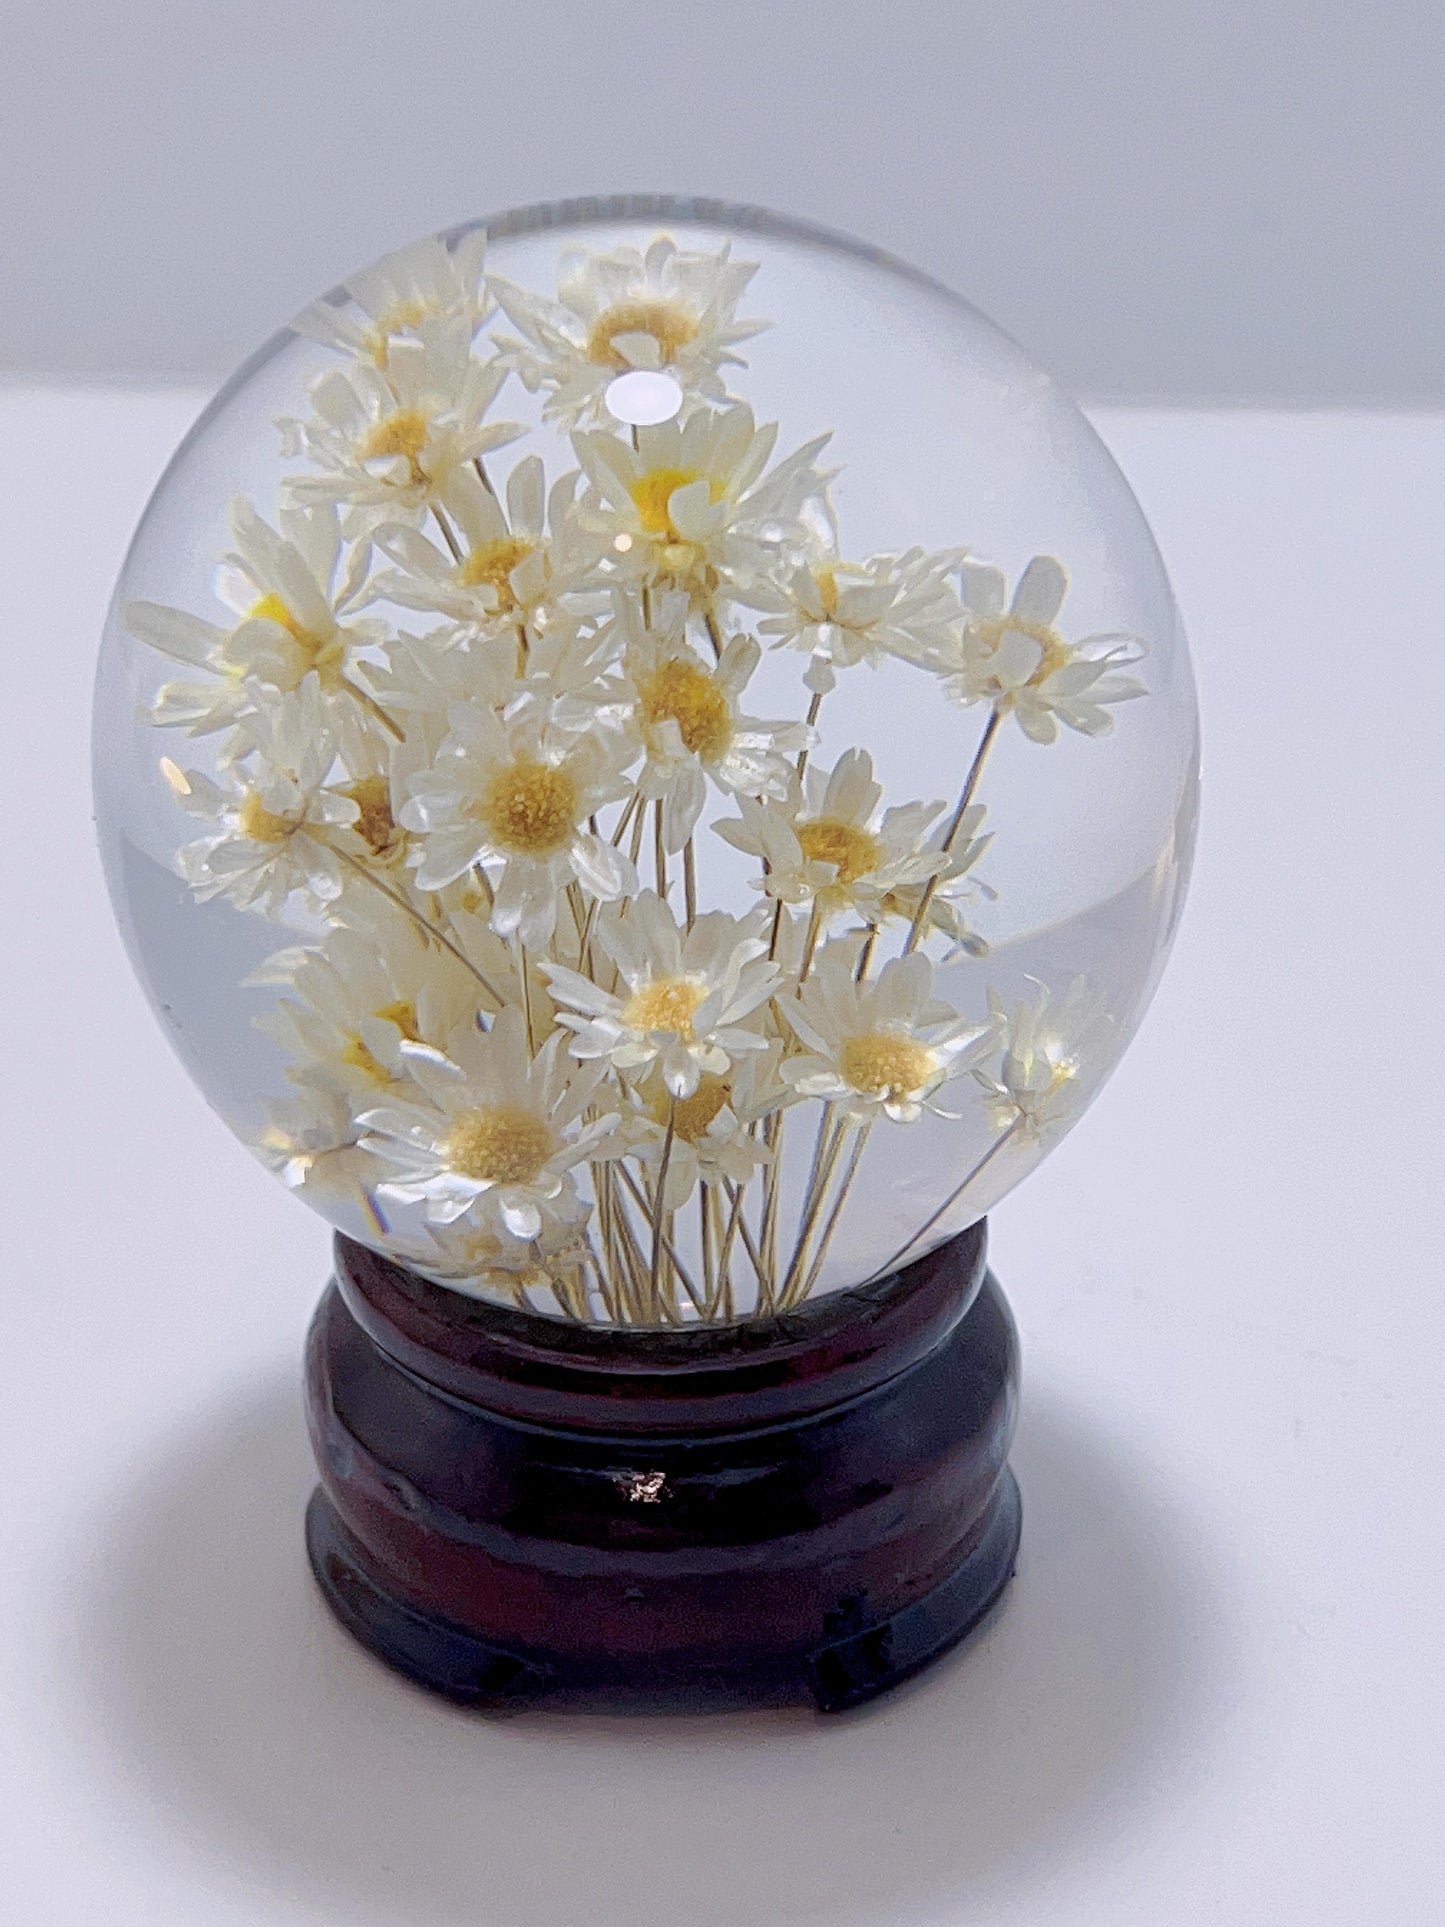 Imortal Flower Lamp - White Flower Sphere